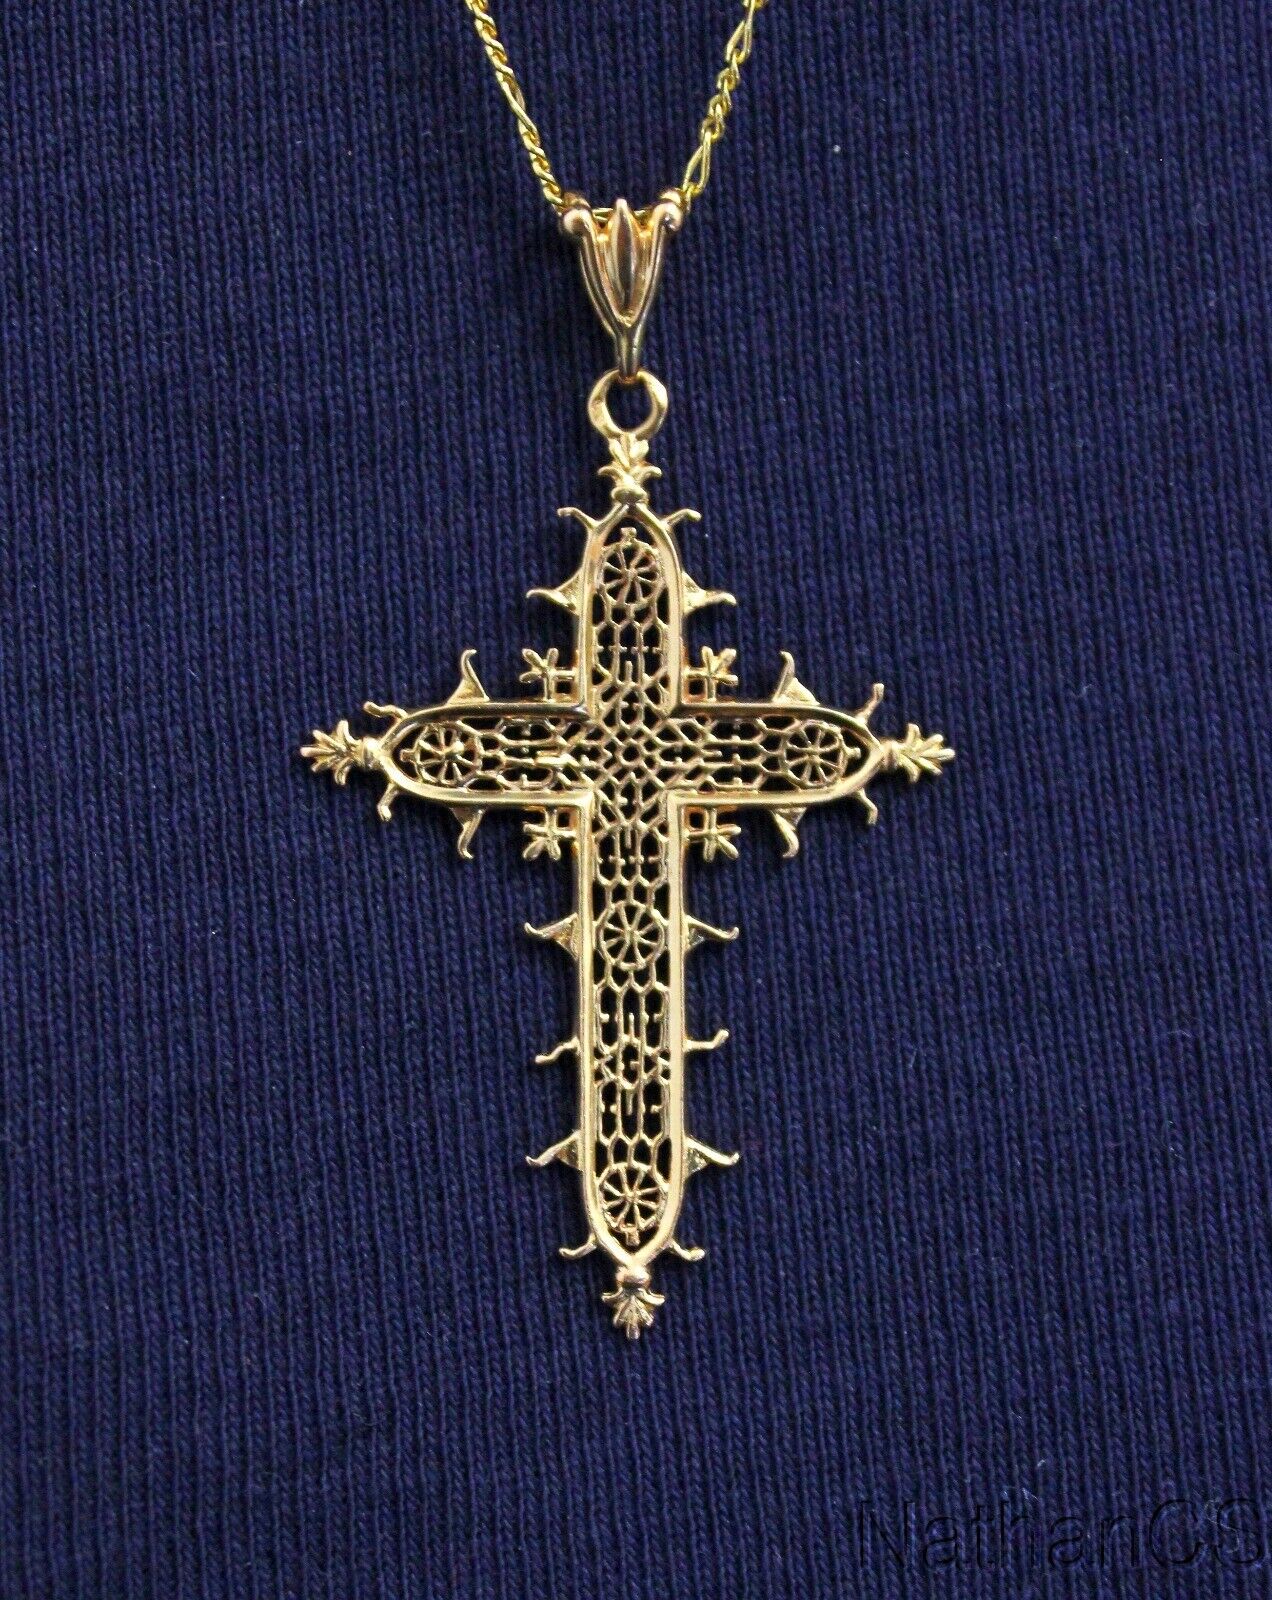 Solid 18K Gold Filigree Cross Pendant Medal of the Estaing Bridge Rare Exquisite